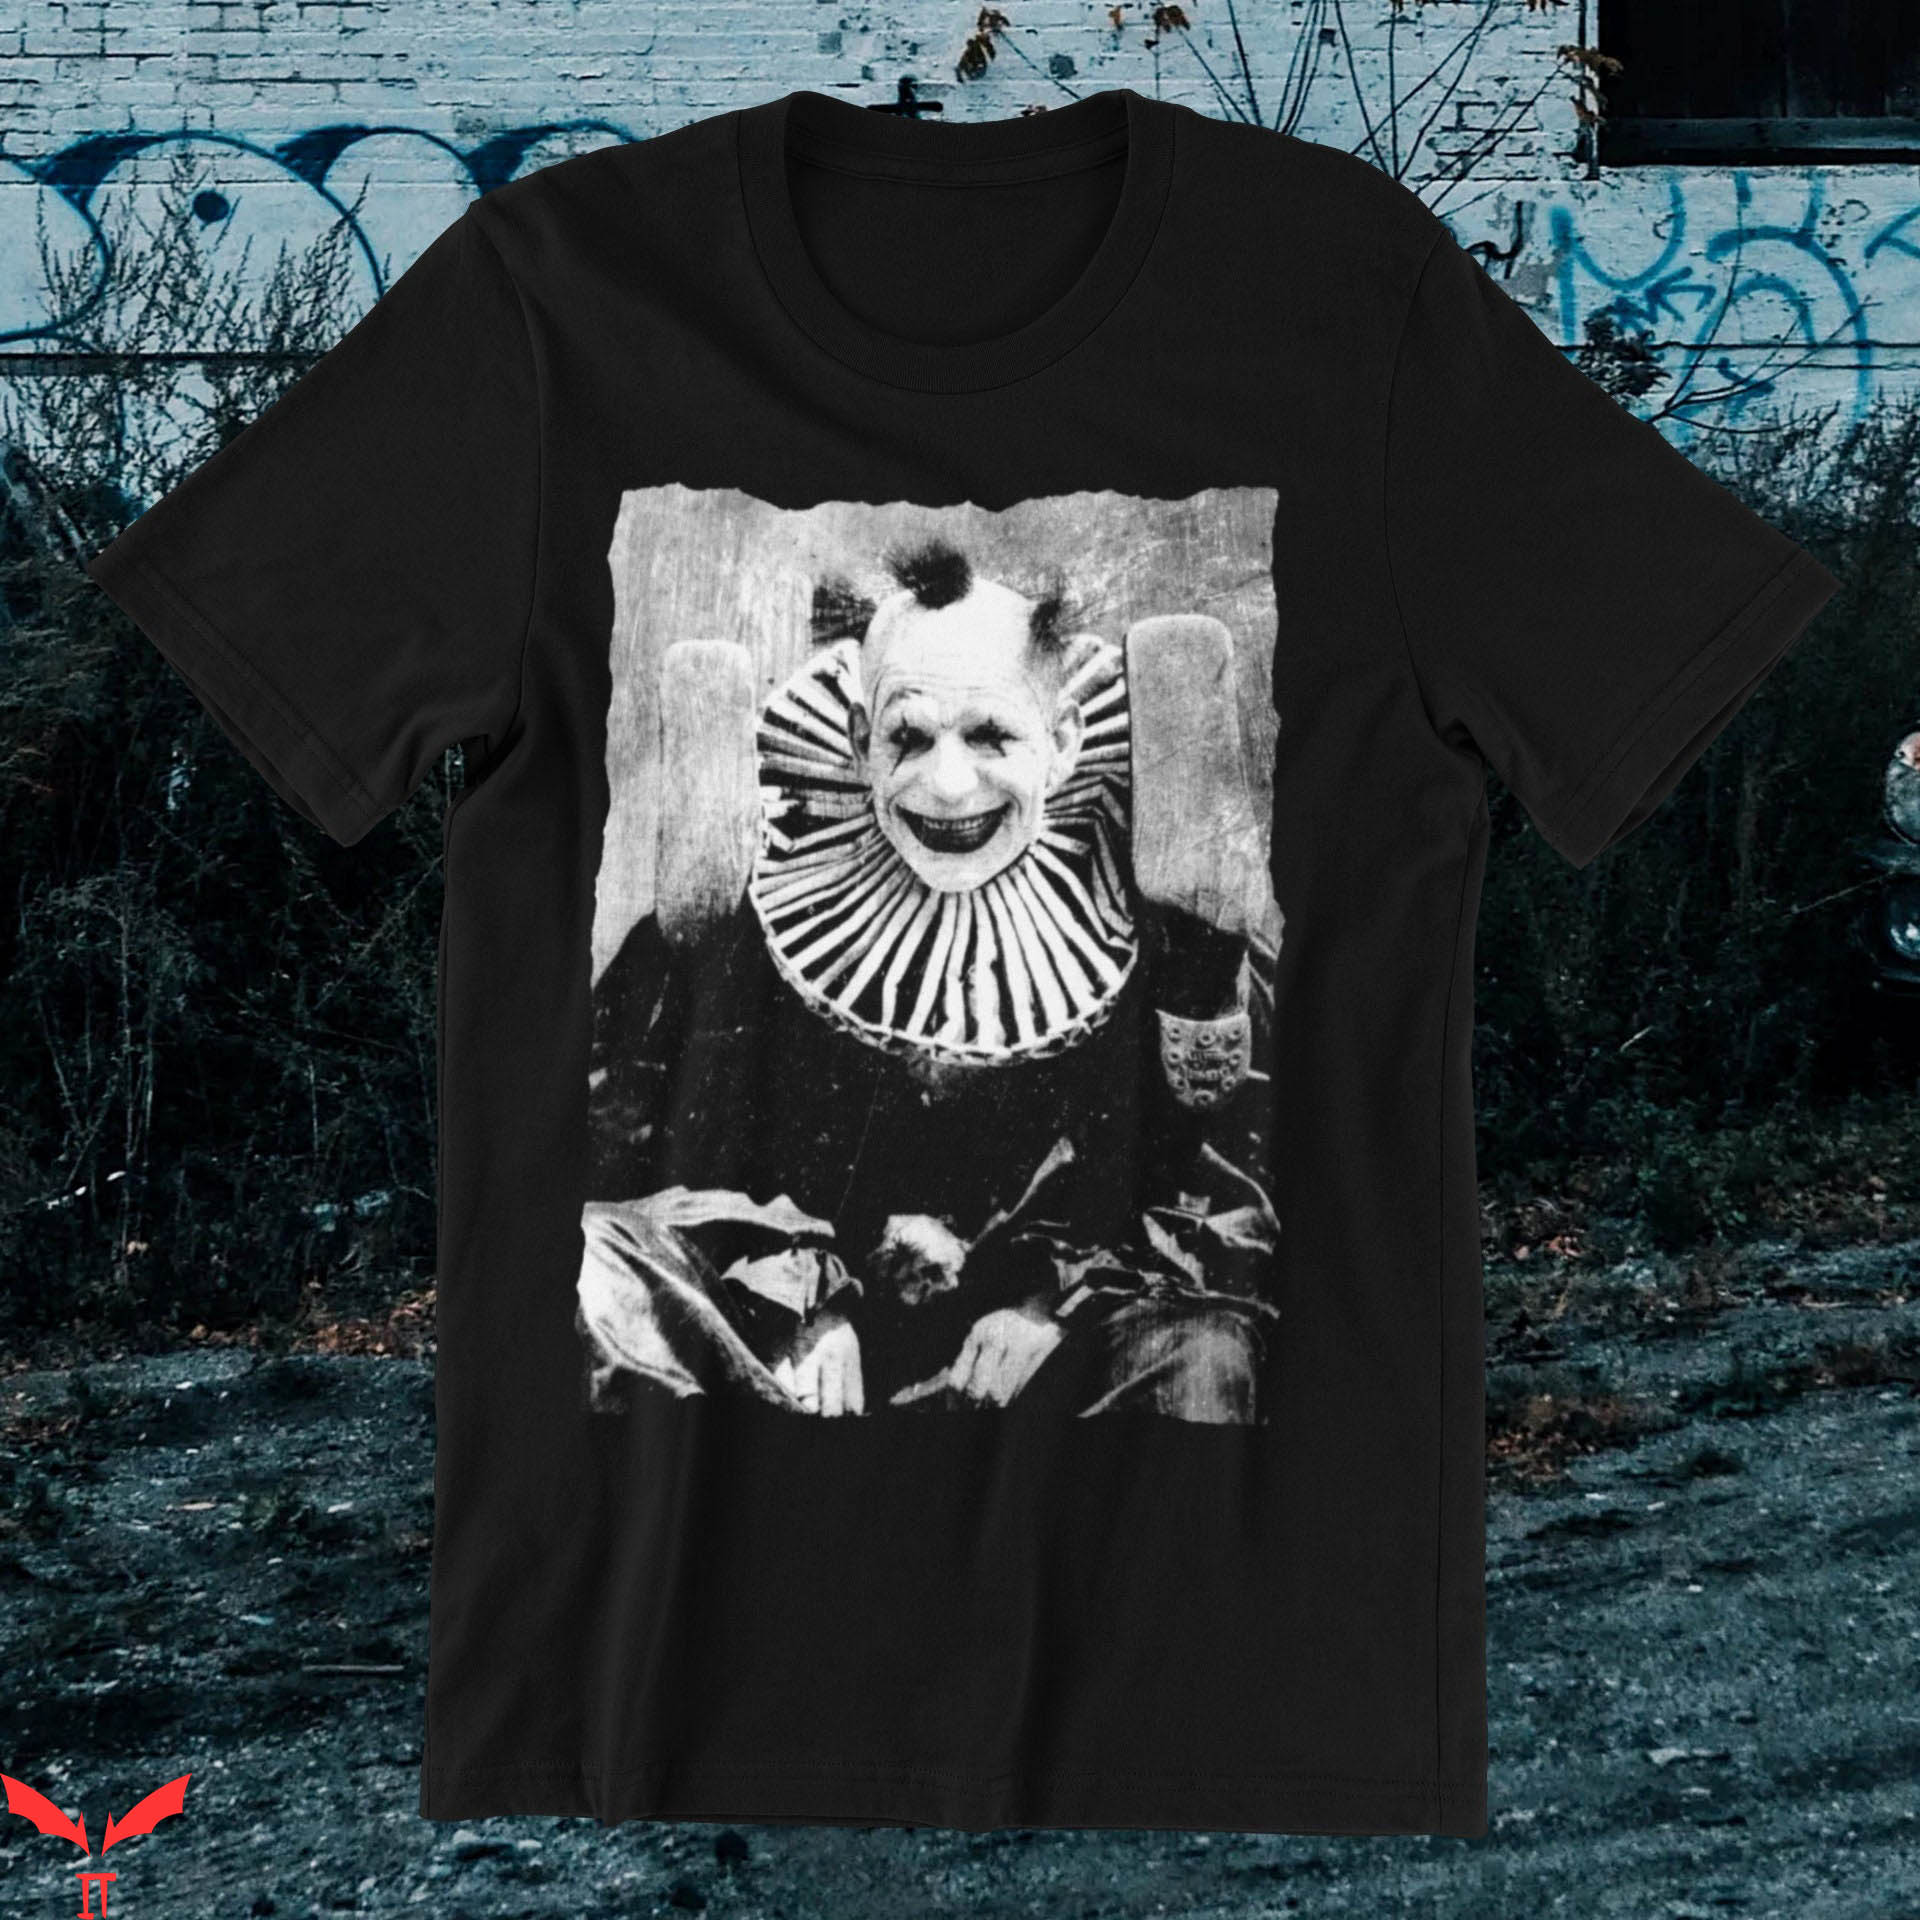 IT The Clown T-Shirt Creepy Clown Vintage Punk Macabre